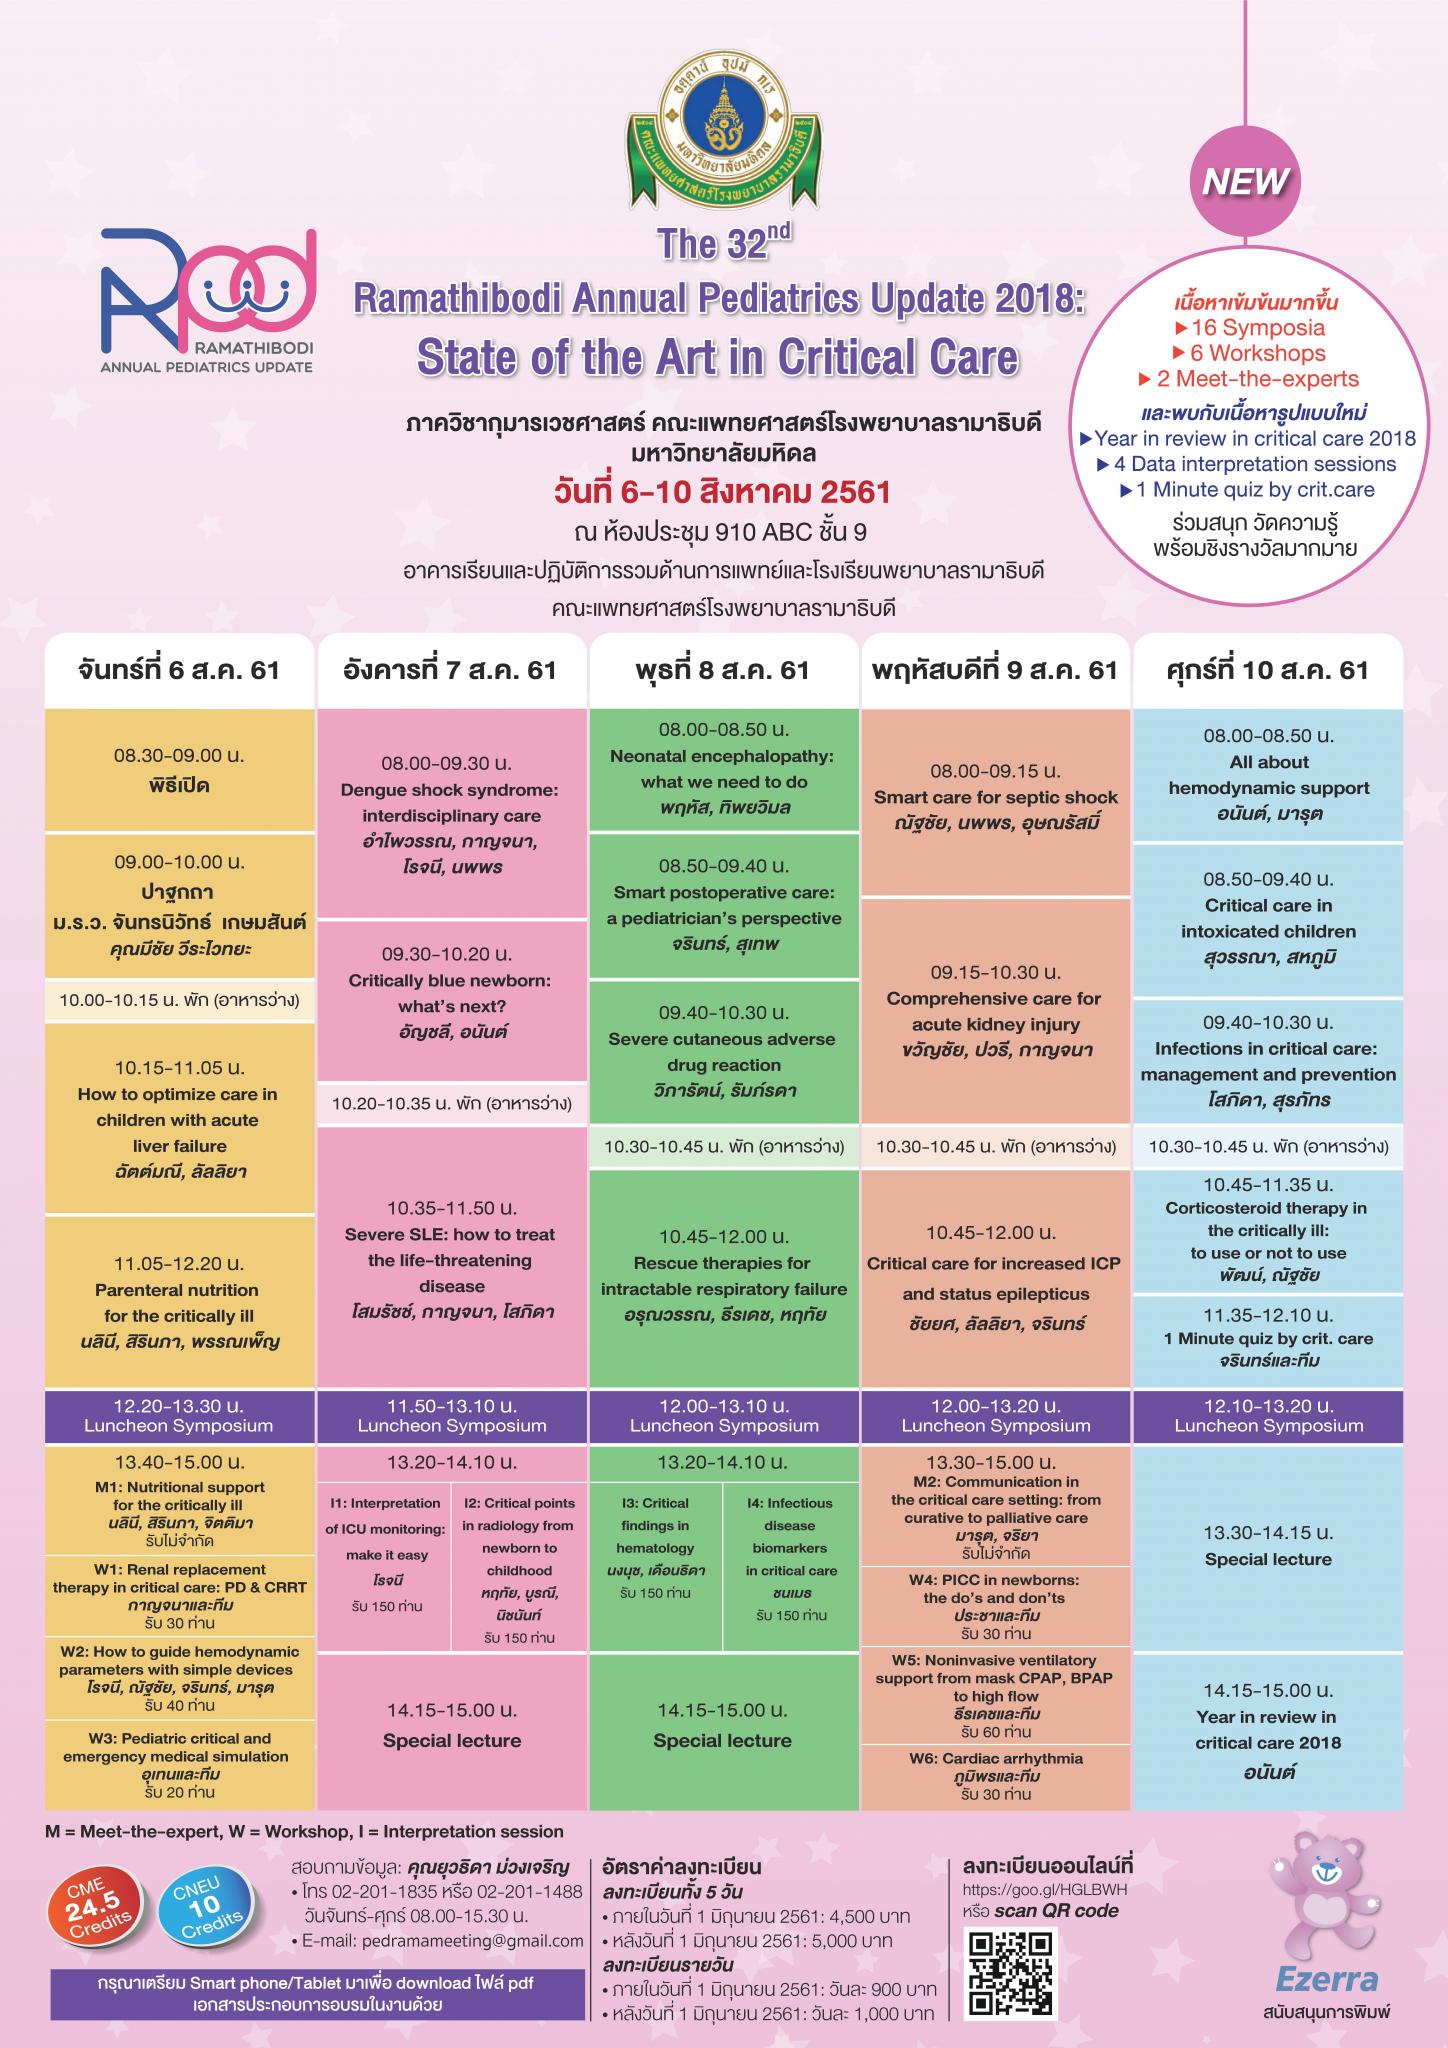 The 32nd Ramathibodi Annual Pediatrics Update 2018: State of the Art in Critical Care